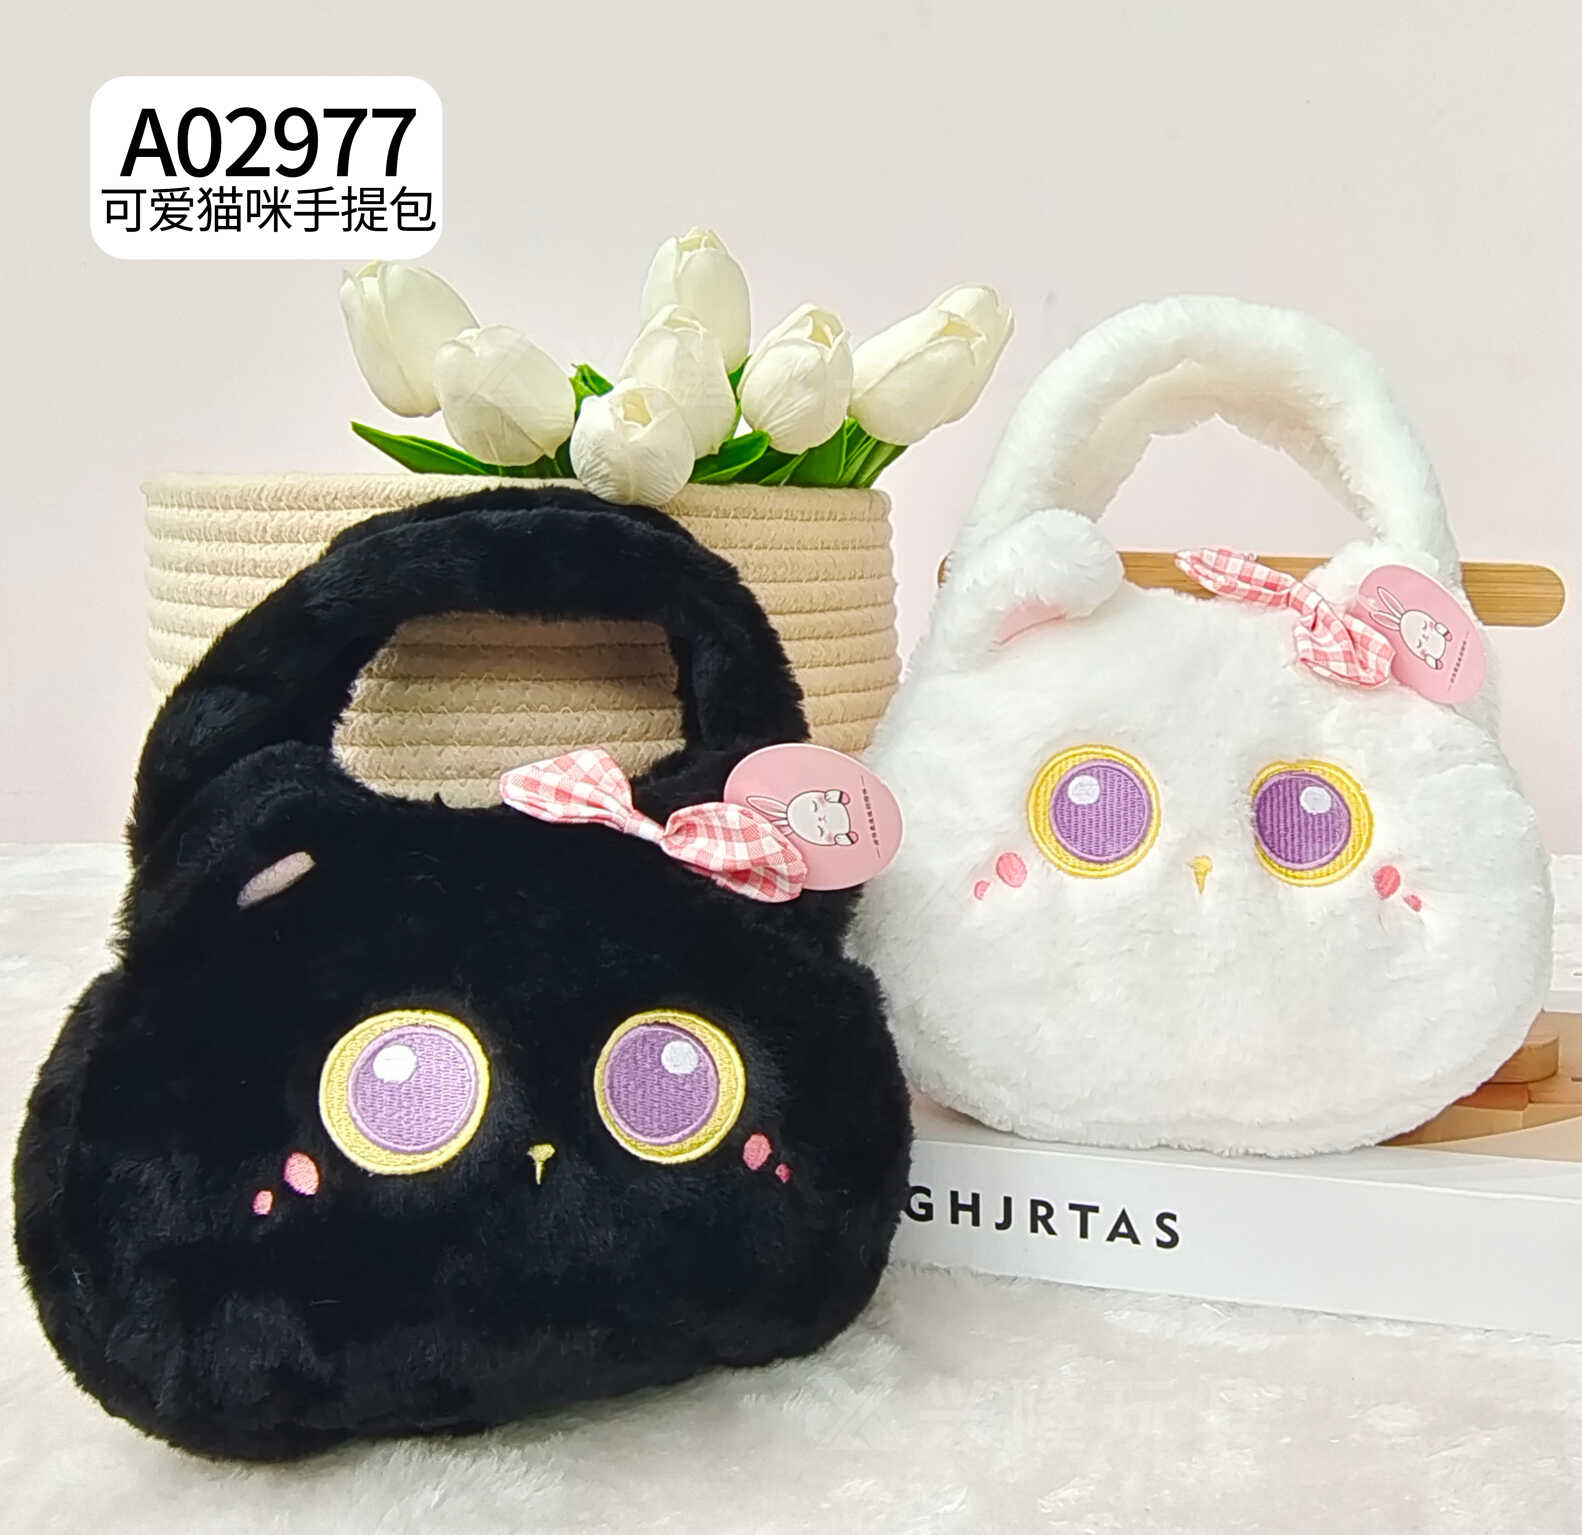 A02977 包包 20cmx15cm 可爱猫咪手提包 